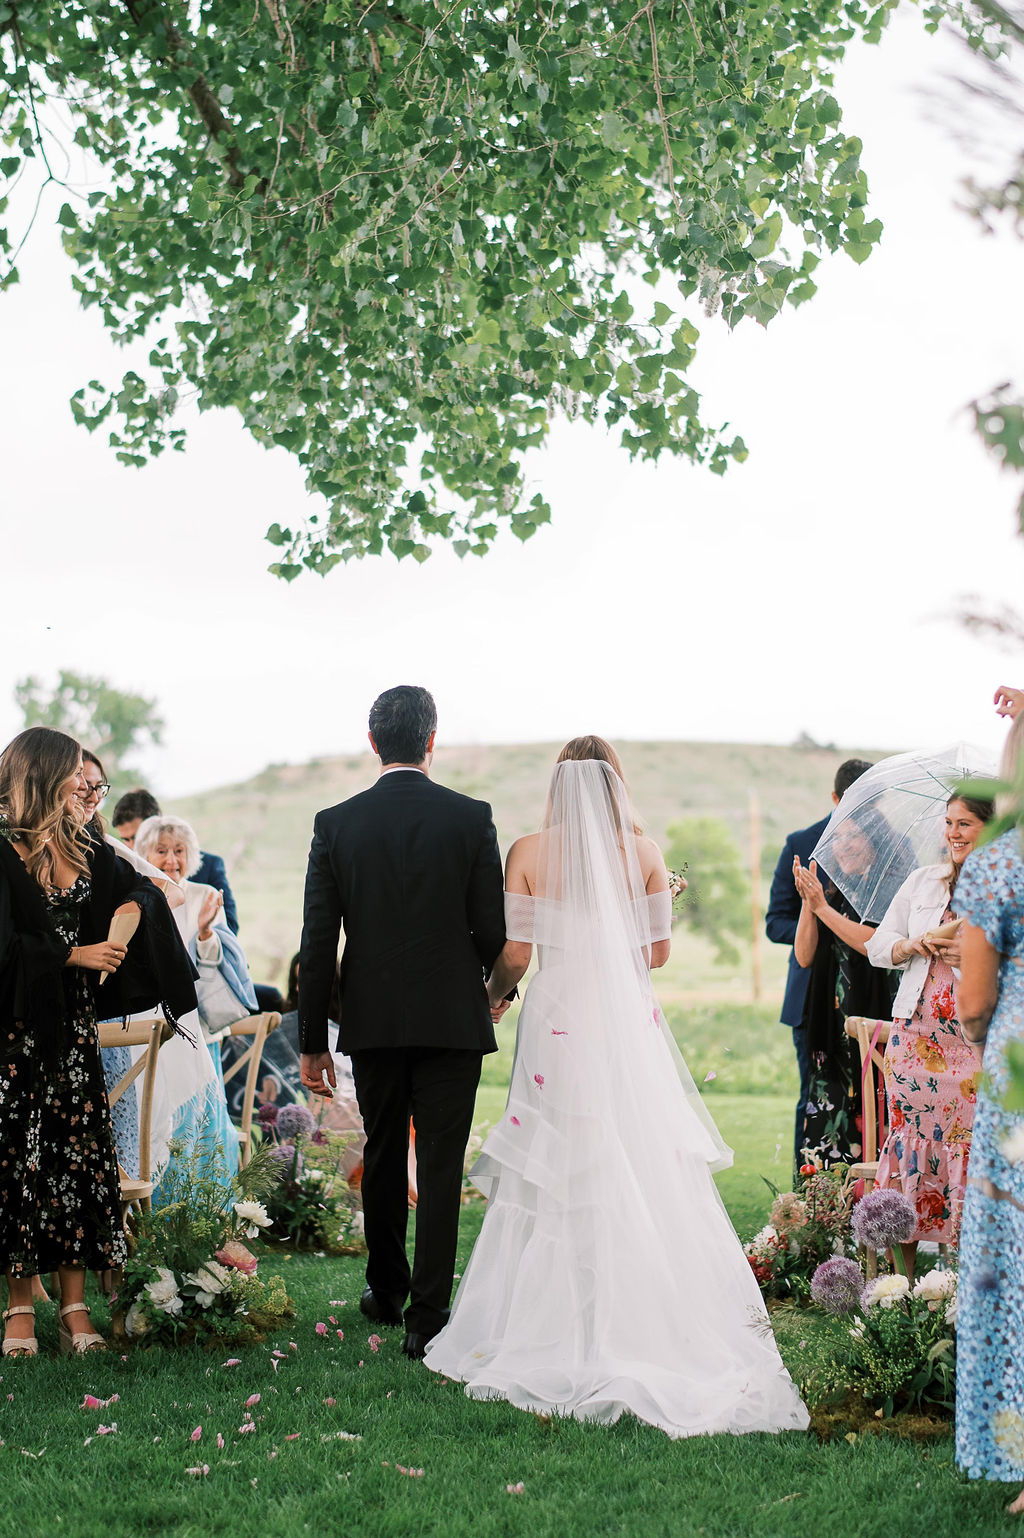 Best Colorado Wedding Venues, Top Colorado Wedding Venues, Jordan Gresham Photography, Boulder Flower Farm